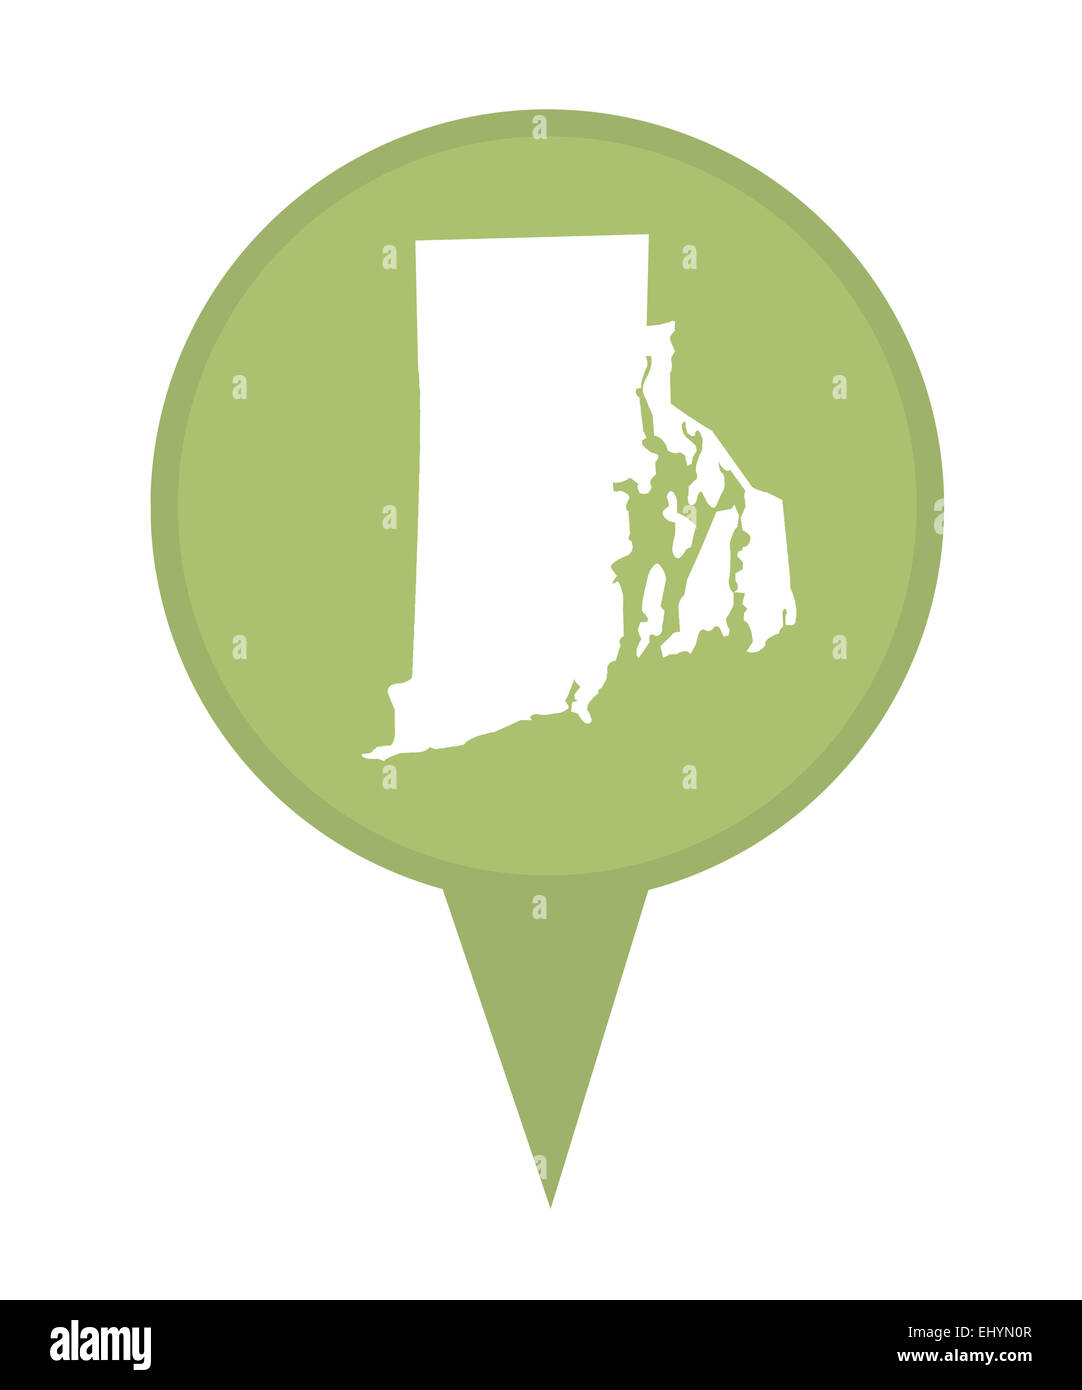 Amerikanischen Bundesstaat Rhode Island Stecknadel isoliert auf einem weißen Hintergrund. Stockfoto